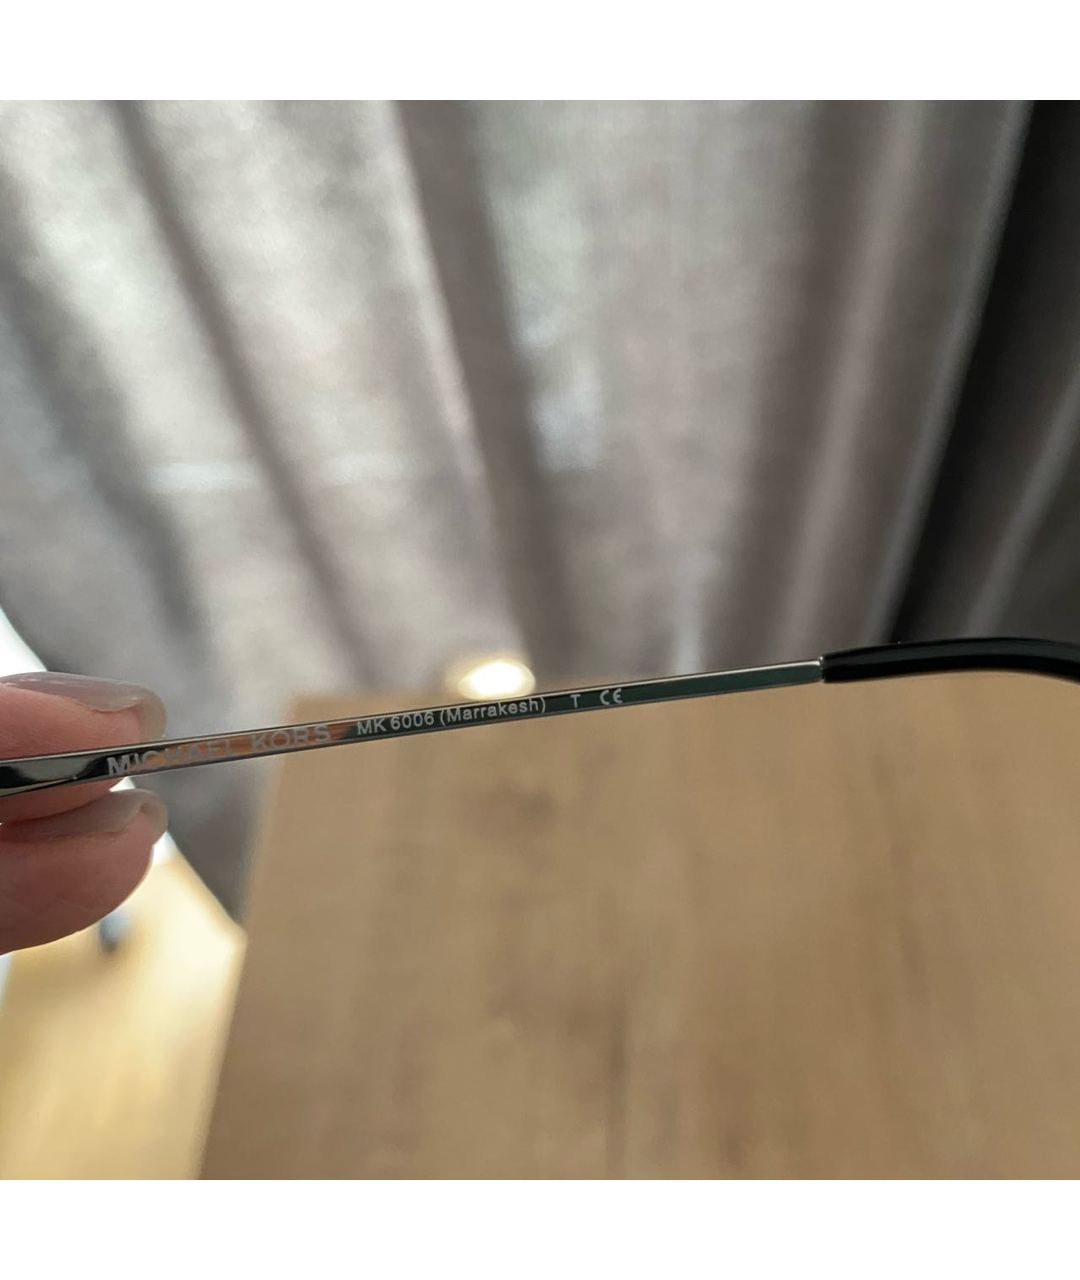 MICHAEL KORS Черные пластиковые солнцезащитные очки, фото 4